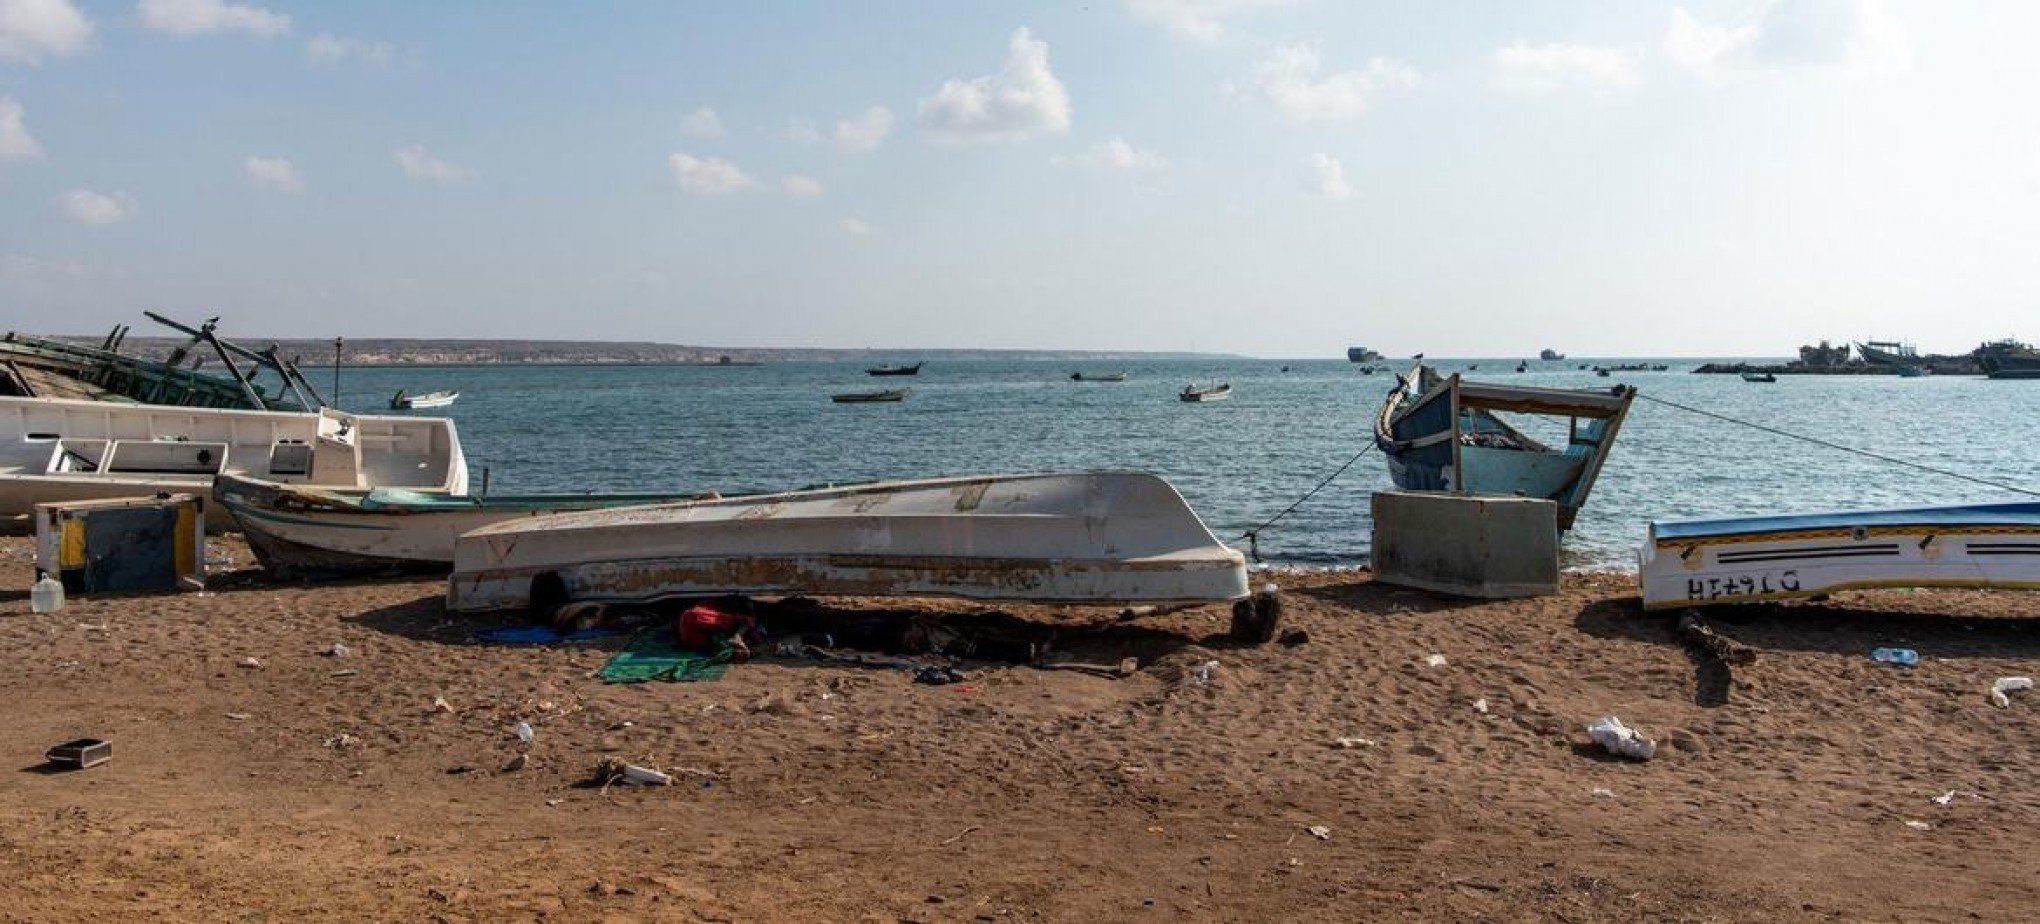 Barco com migrantes afunda e deixa 189 vítimas entre mortos e desaparecidos